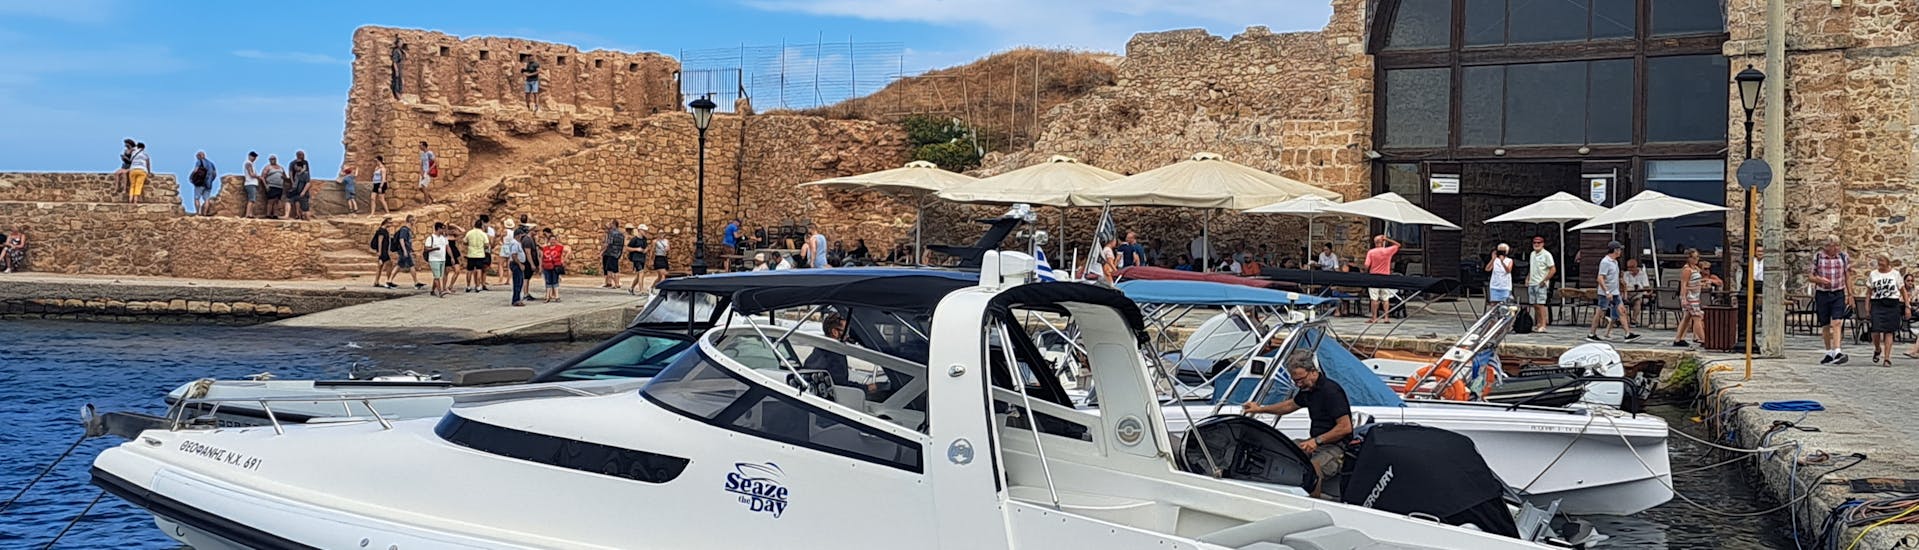 Foto de un bote RIB en el agua durante un viaje en barco organizado por SEAze The Day Crete.